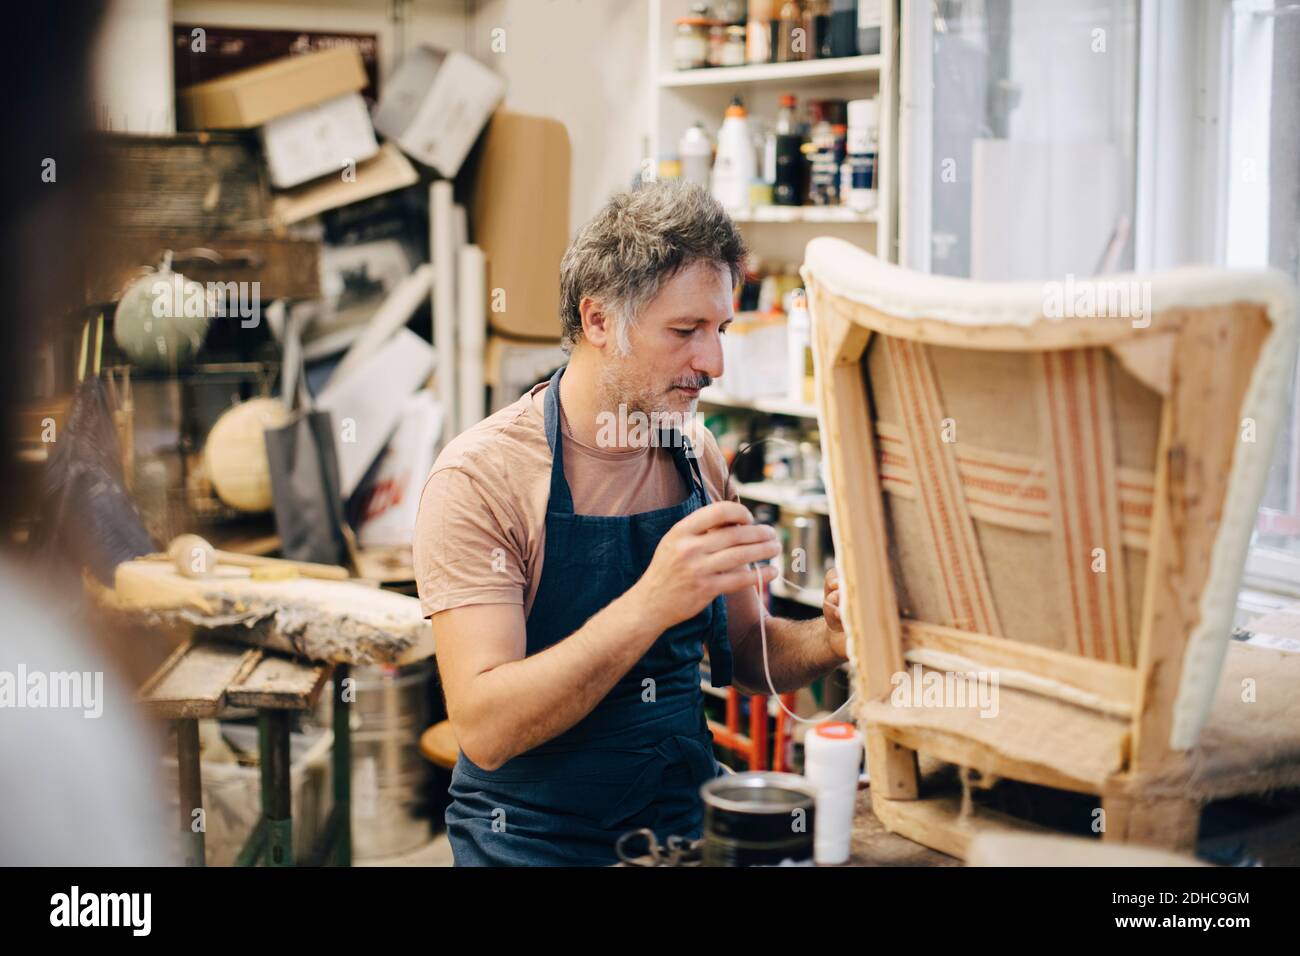 Craftsperson stitching chair in workshop Stock Photo